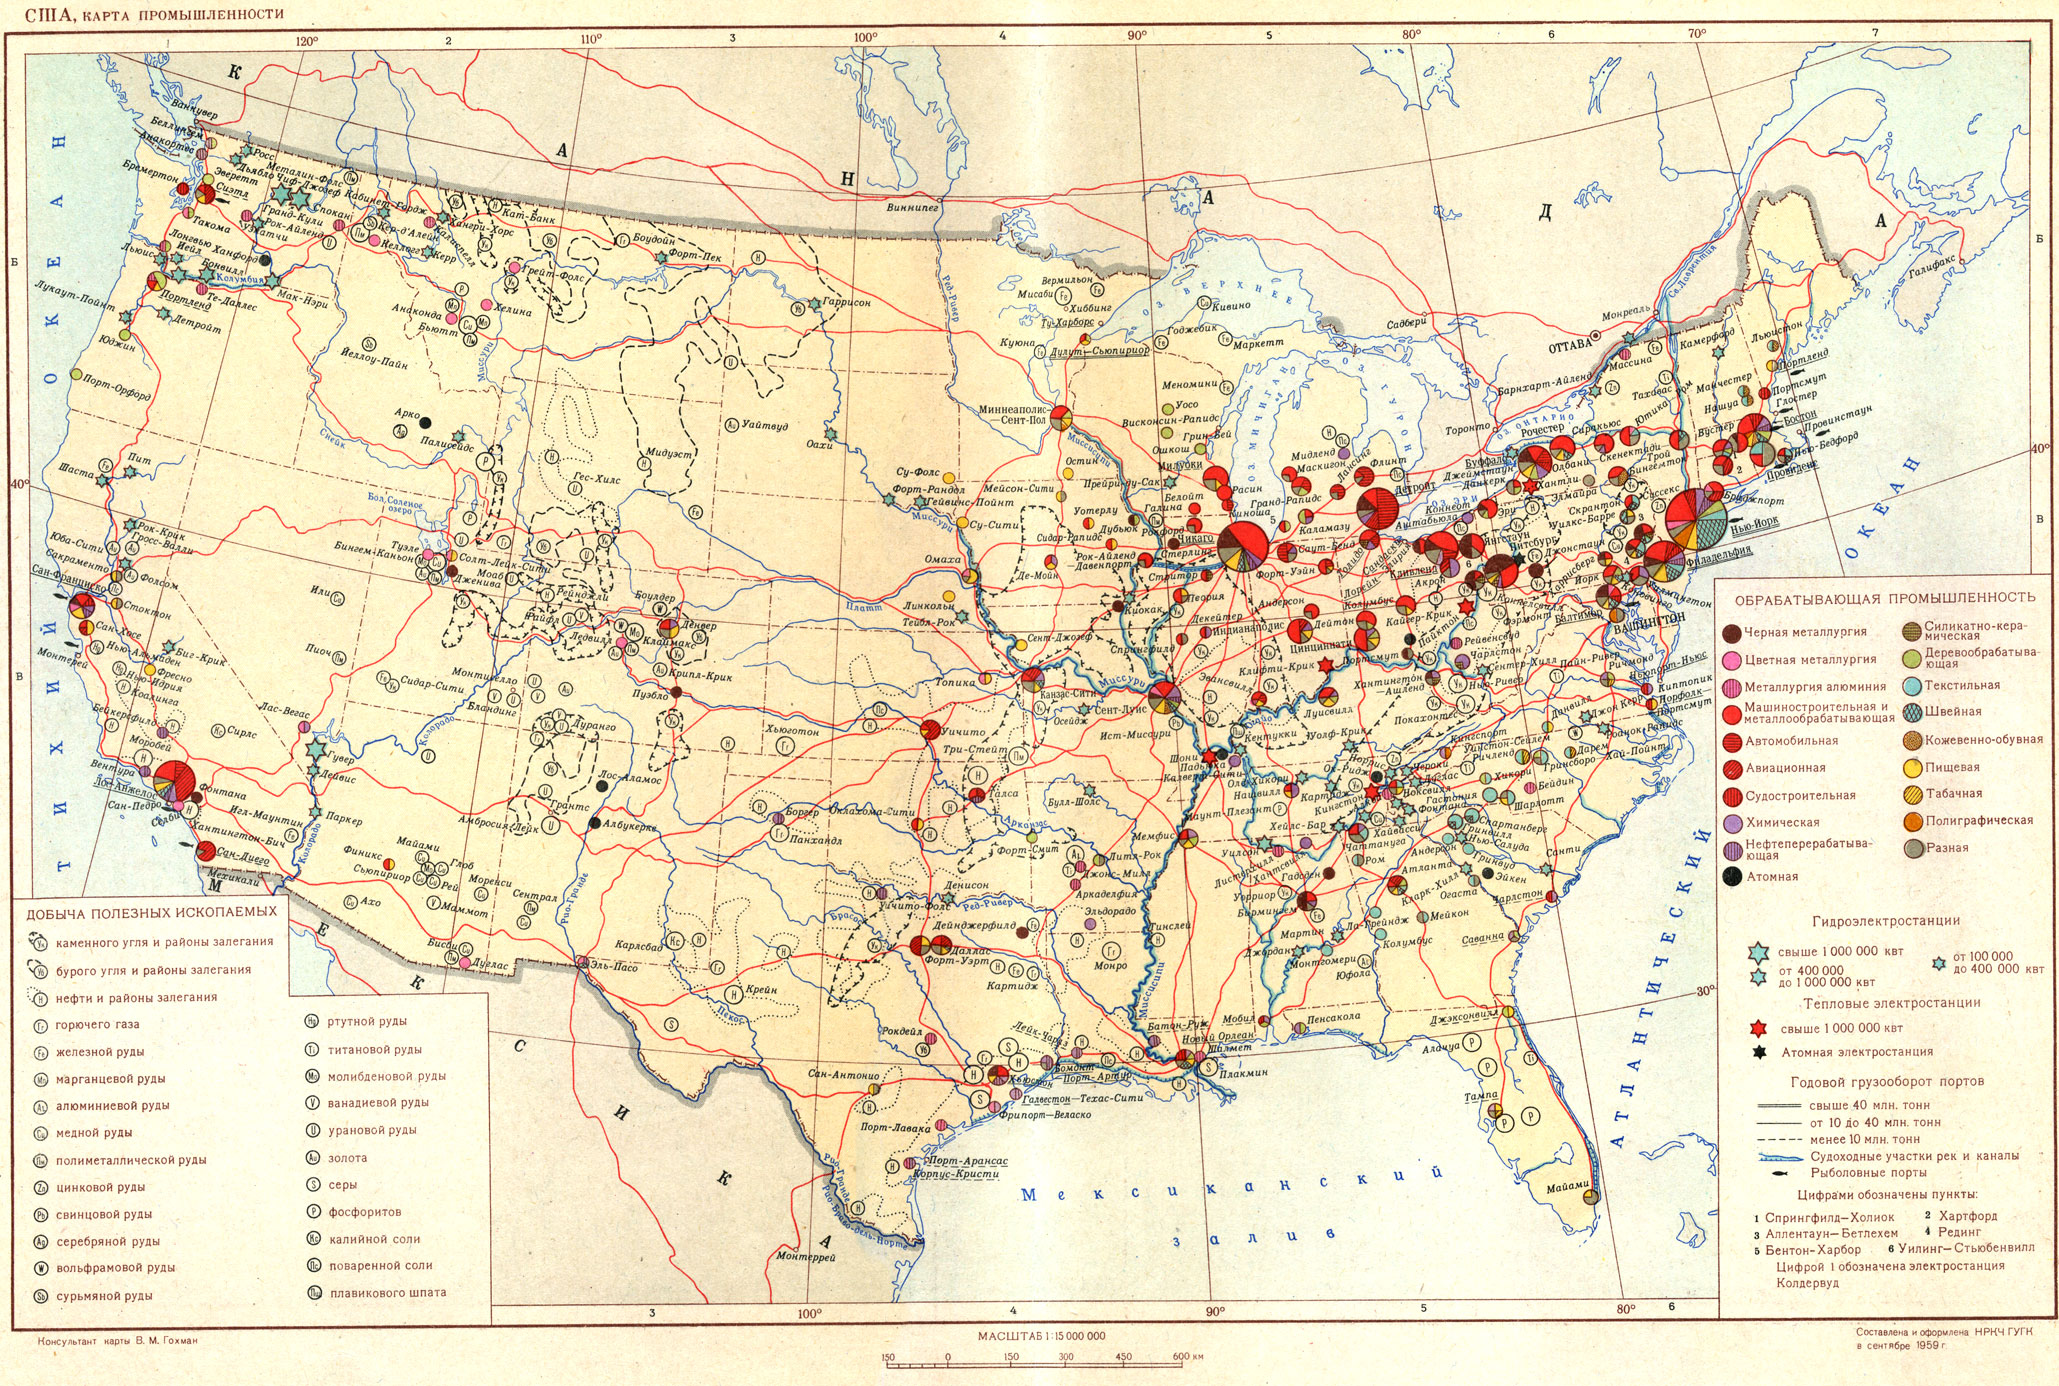 Полезные ископаемые сша на карте. Месторождения полезных ископаемых в США на карте. Полезные ископаемые Америка на карте США. Карта полезных ископаемых США по Штатам.